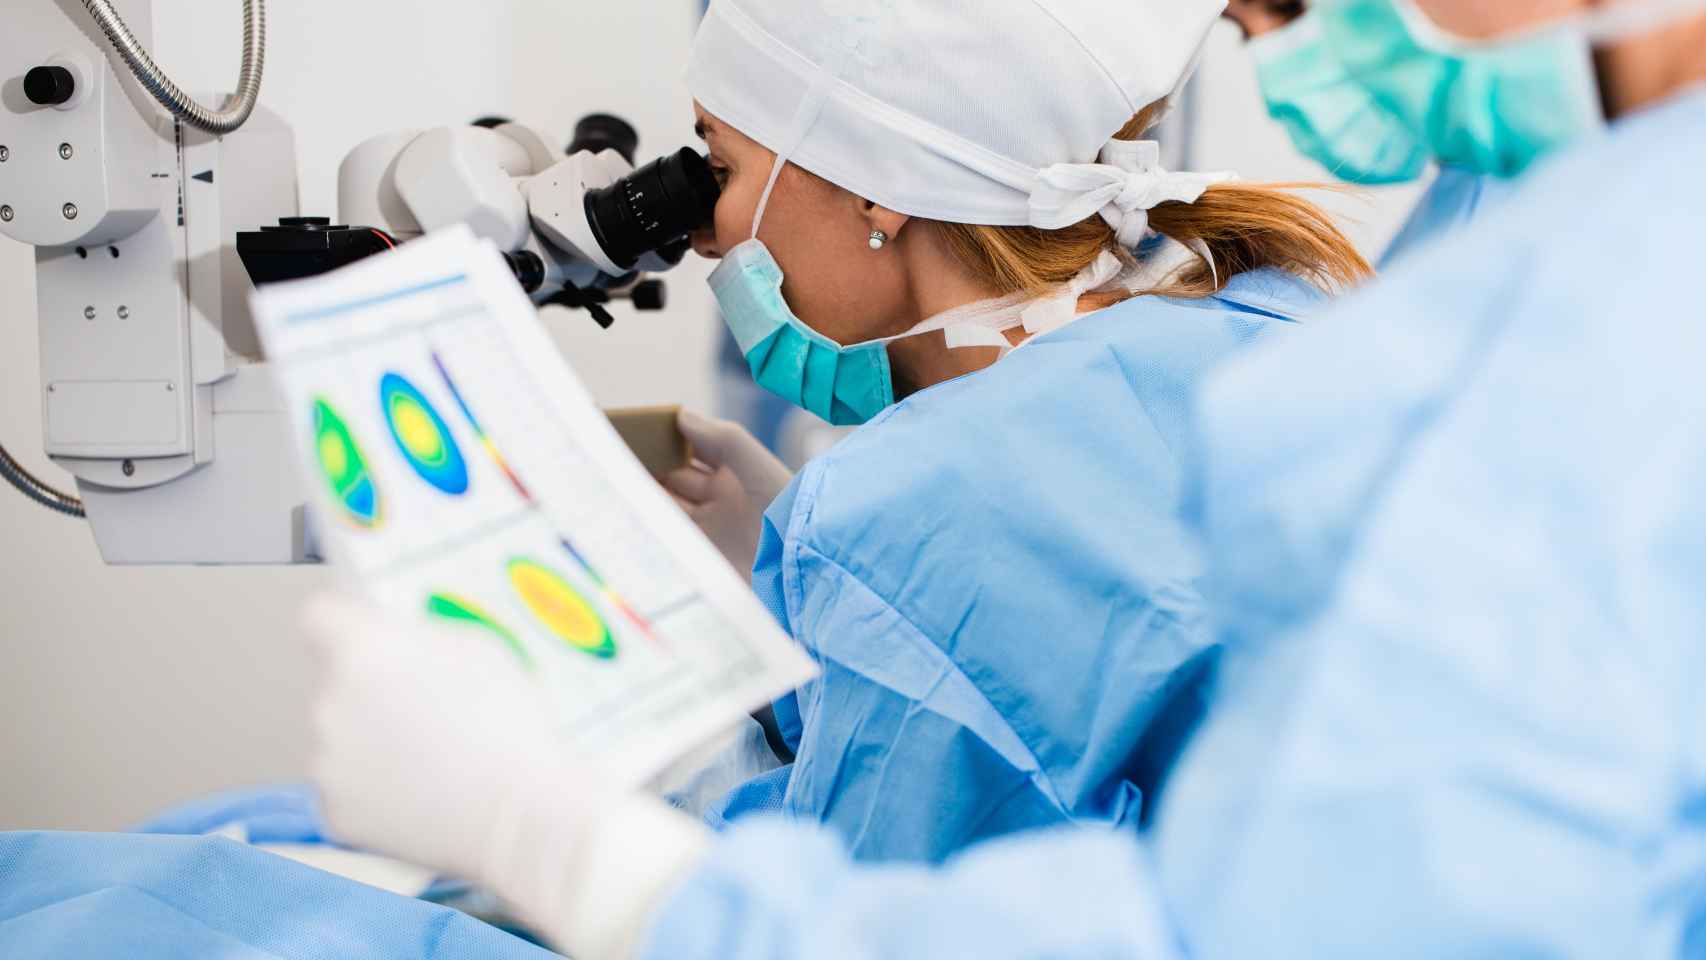 Un equipo médico en el quirófano revisando los datos oftalmológicos.